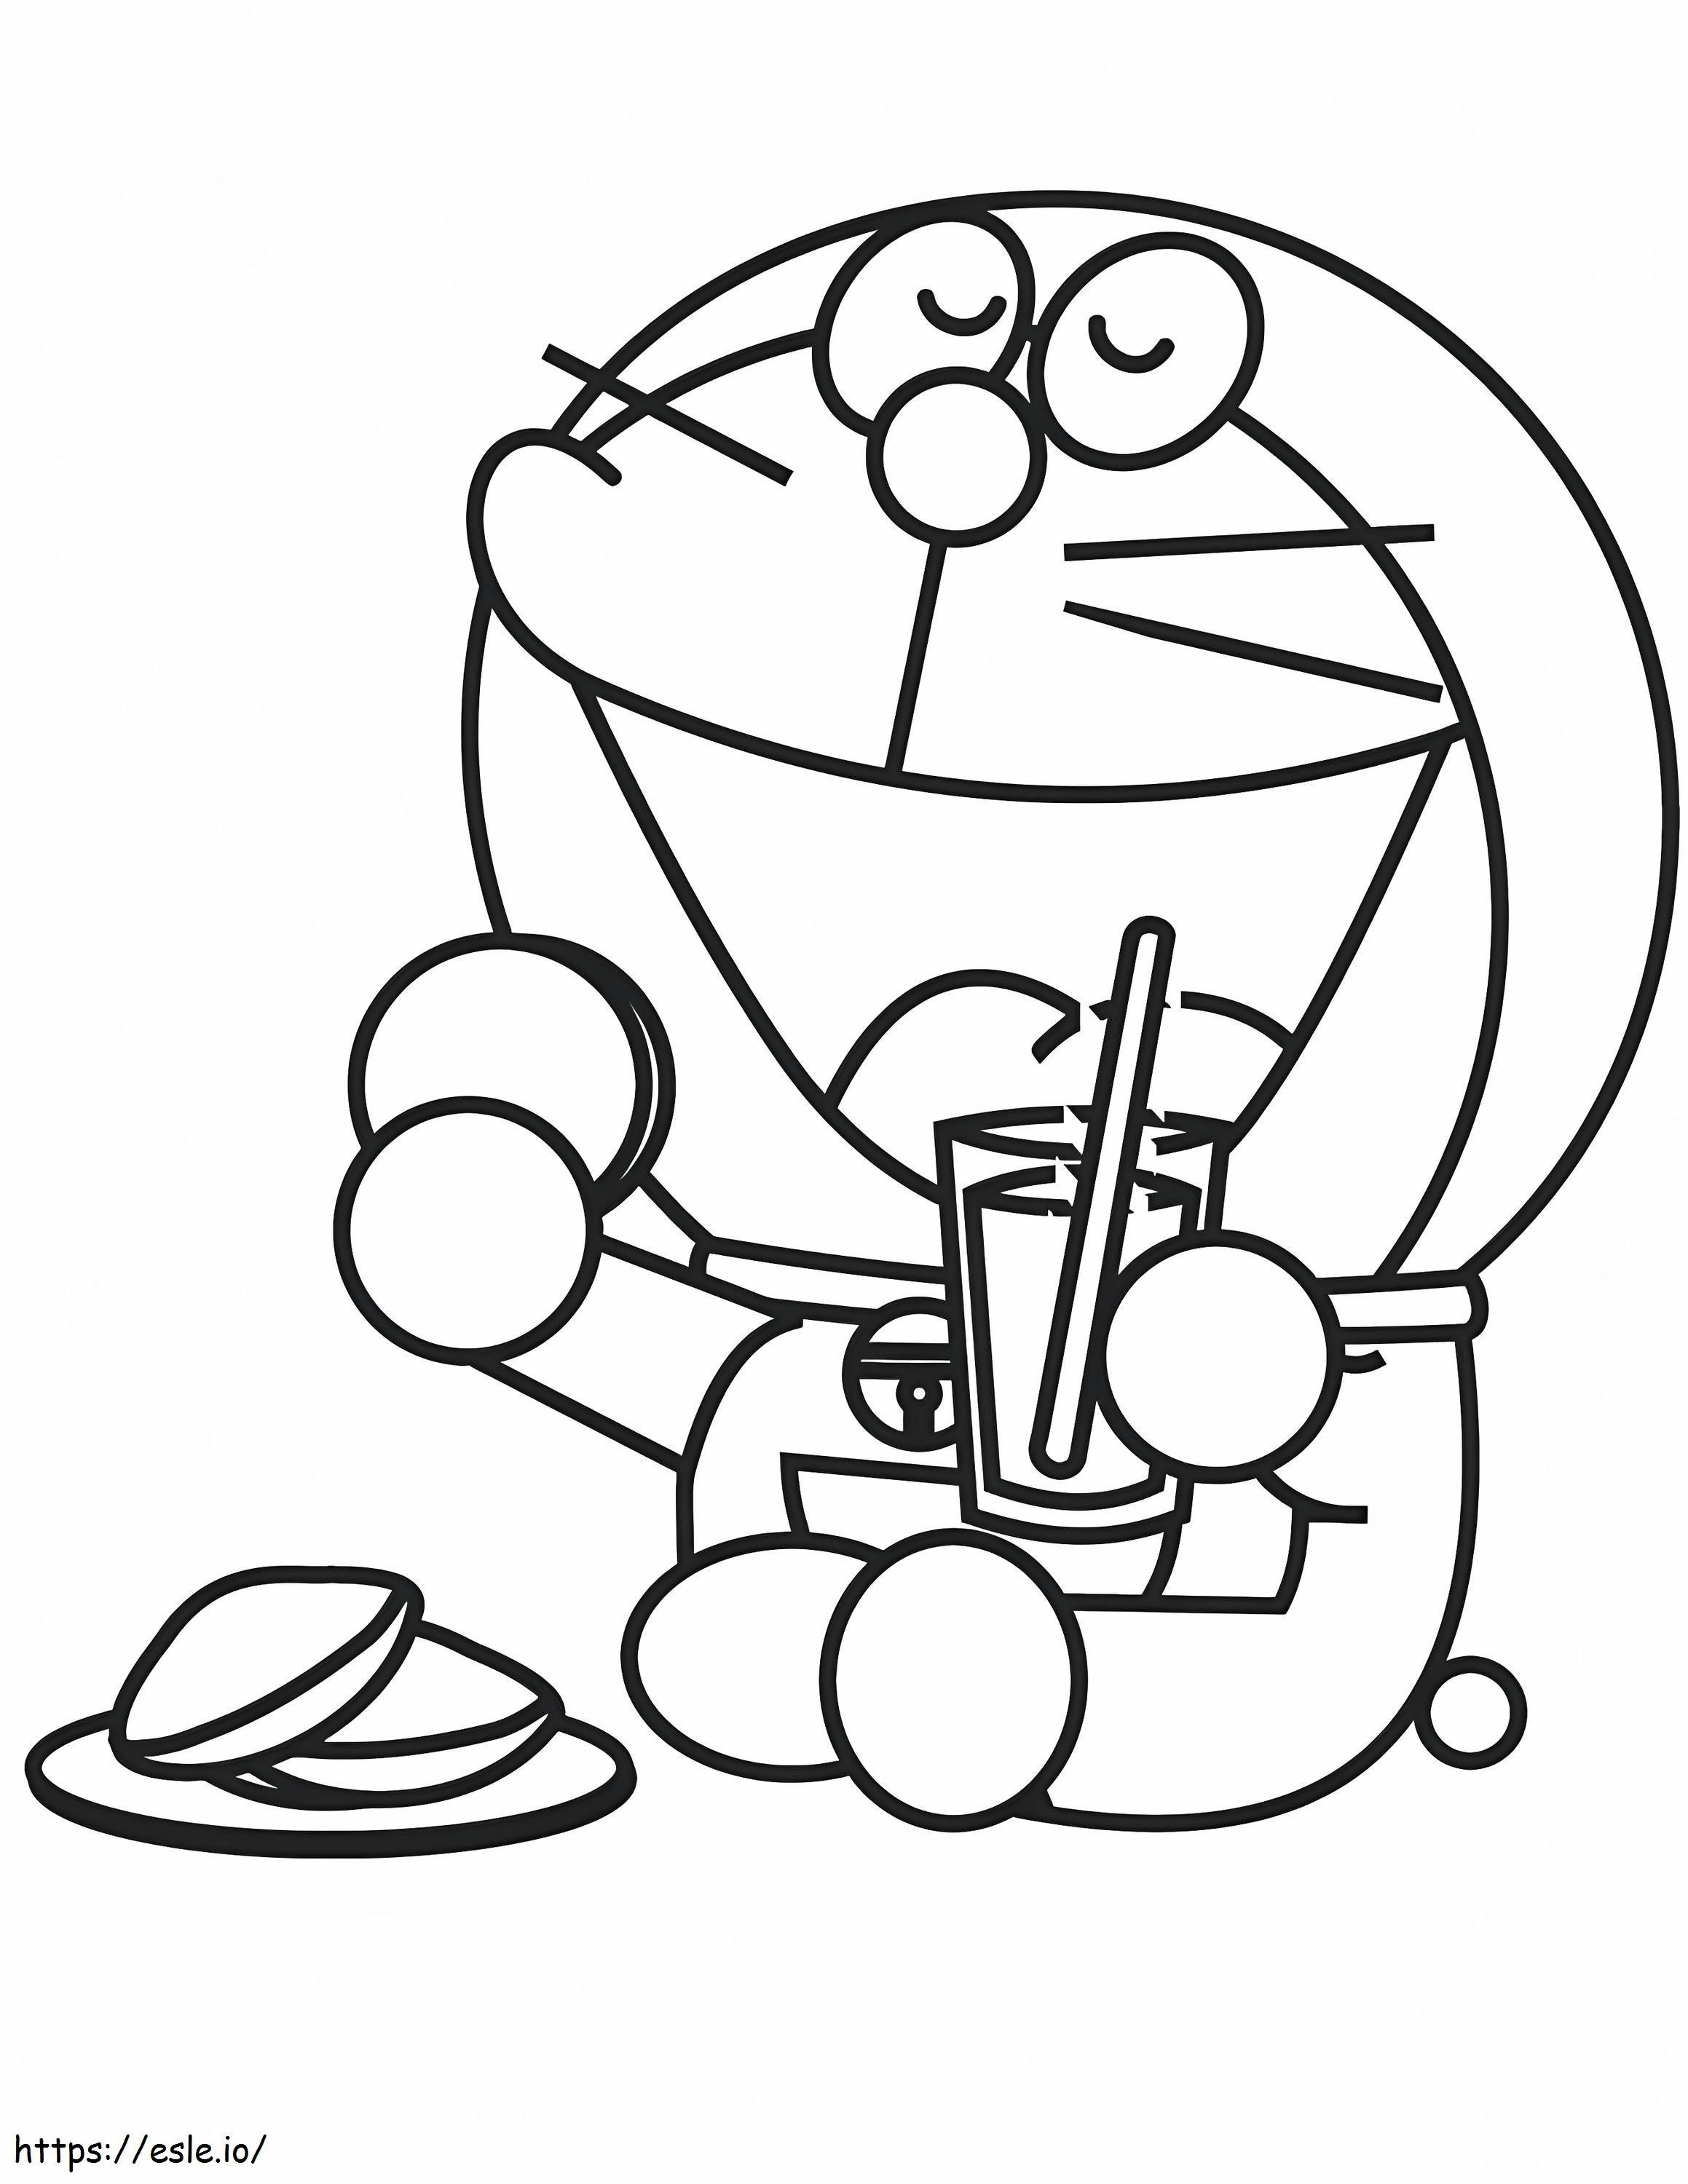 1531276609 Doraemon Almorzando A4 para colorear